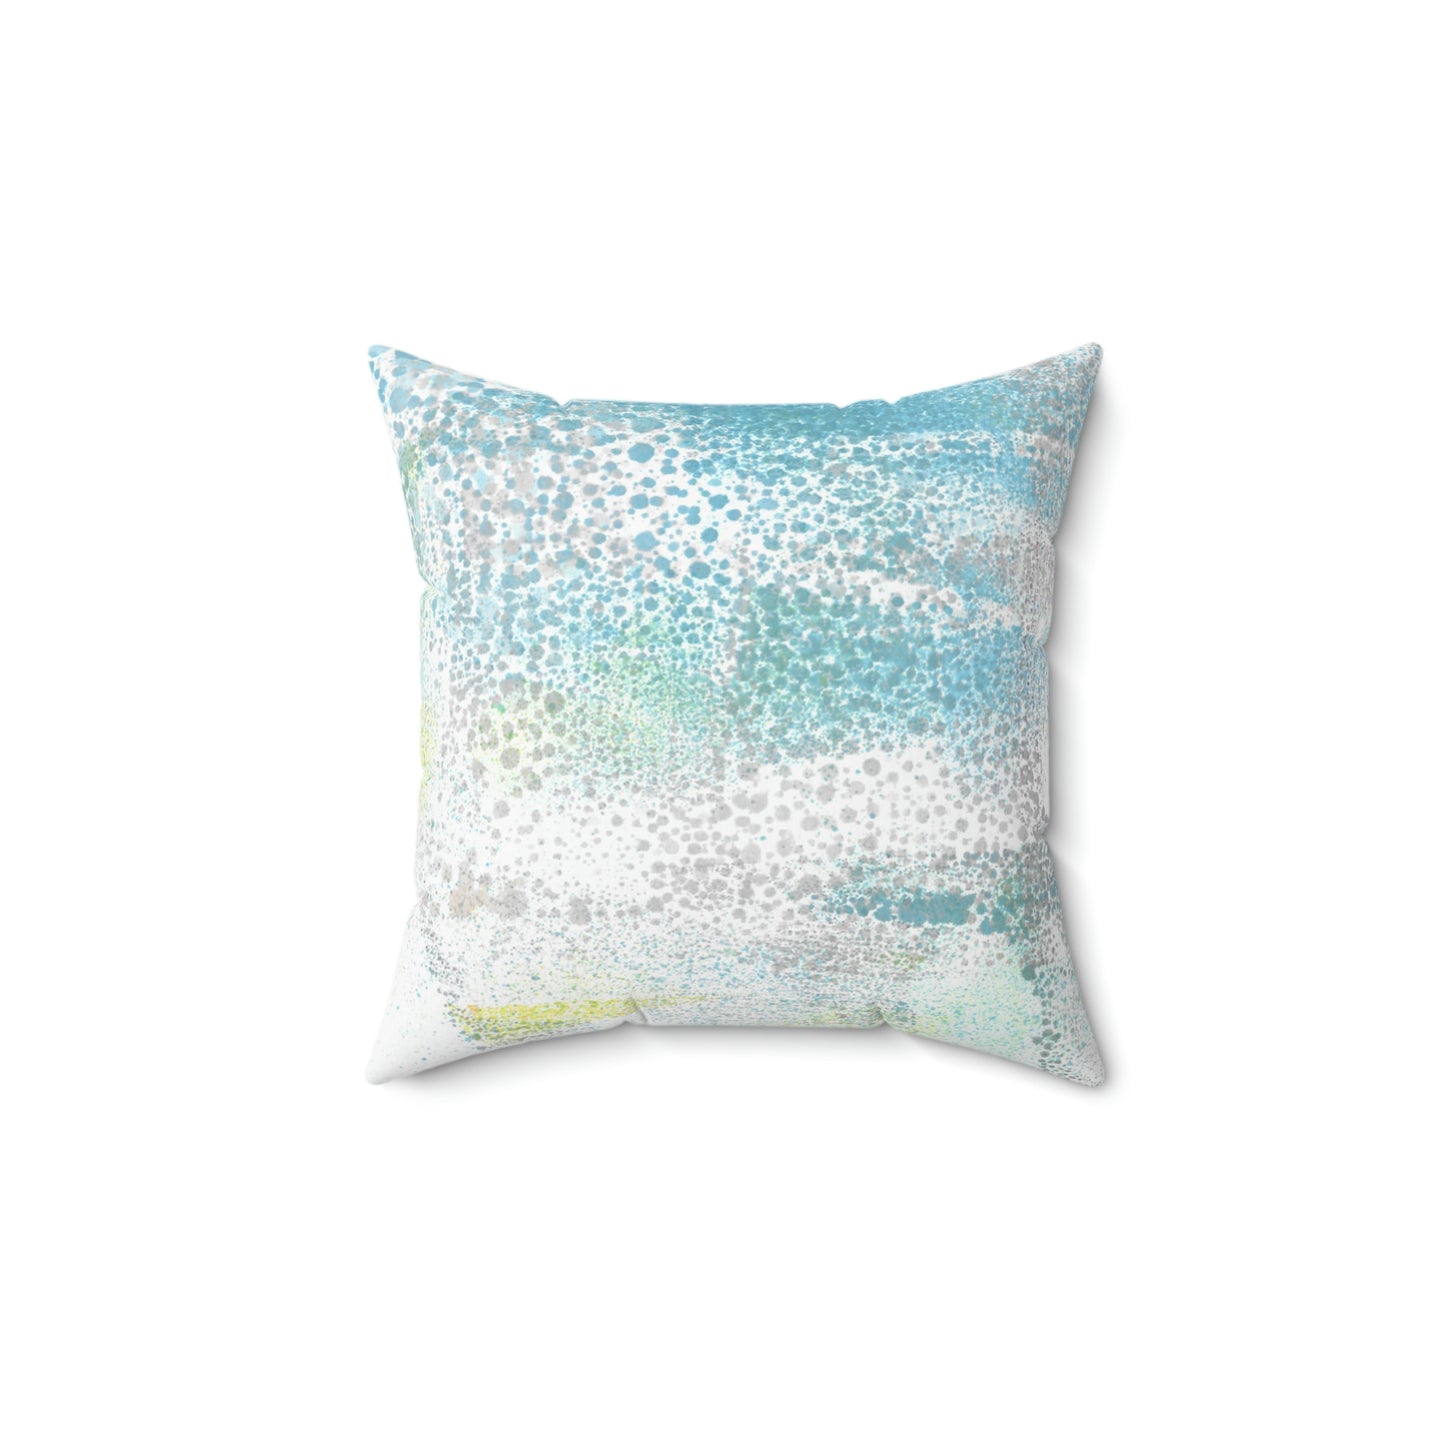 Gentle Rain Square Pillow - Alja Design